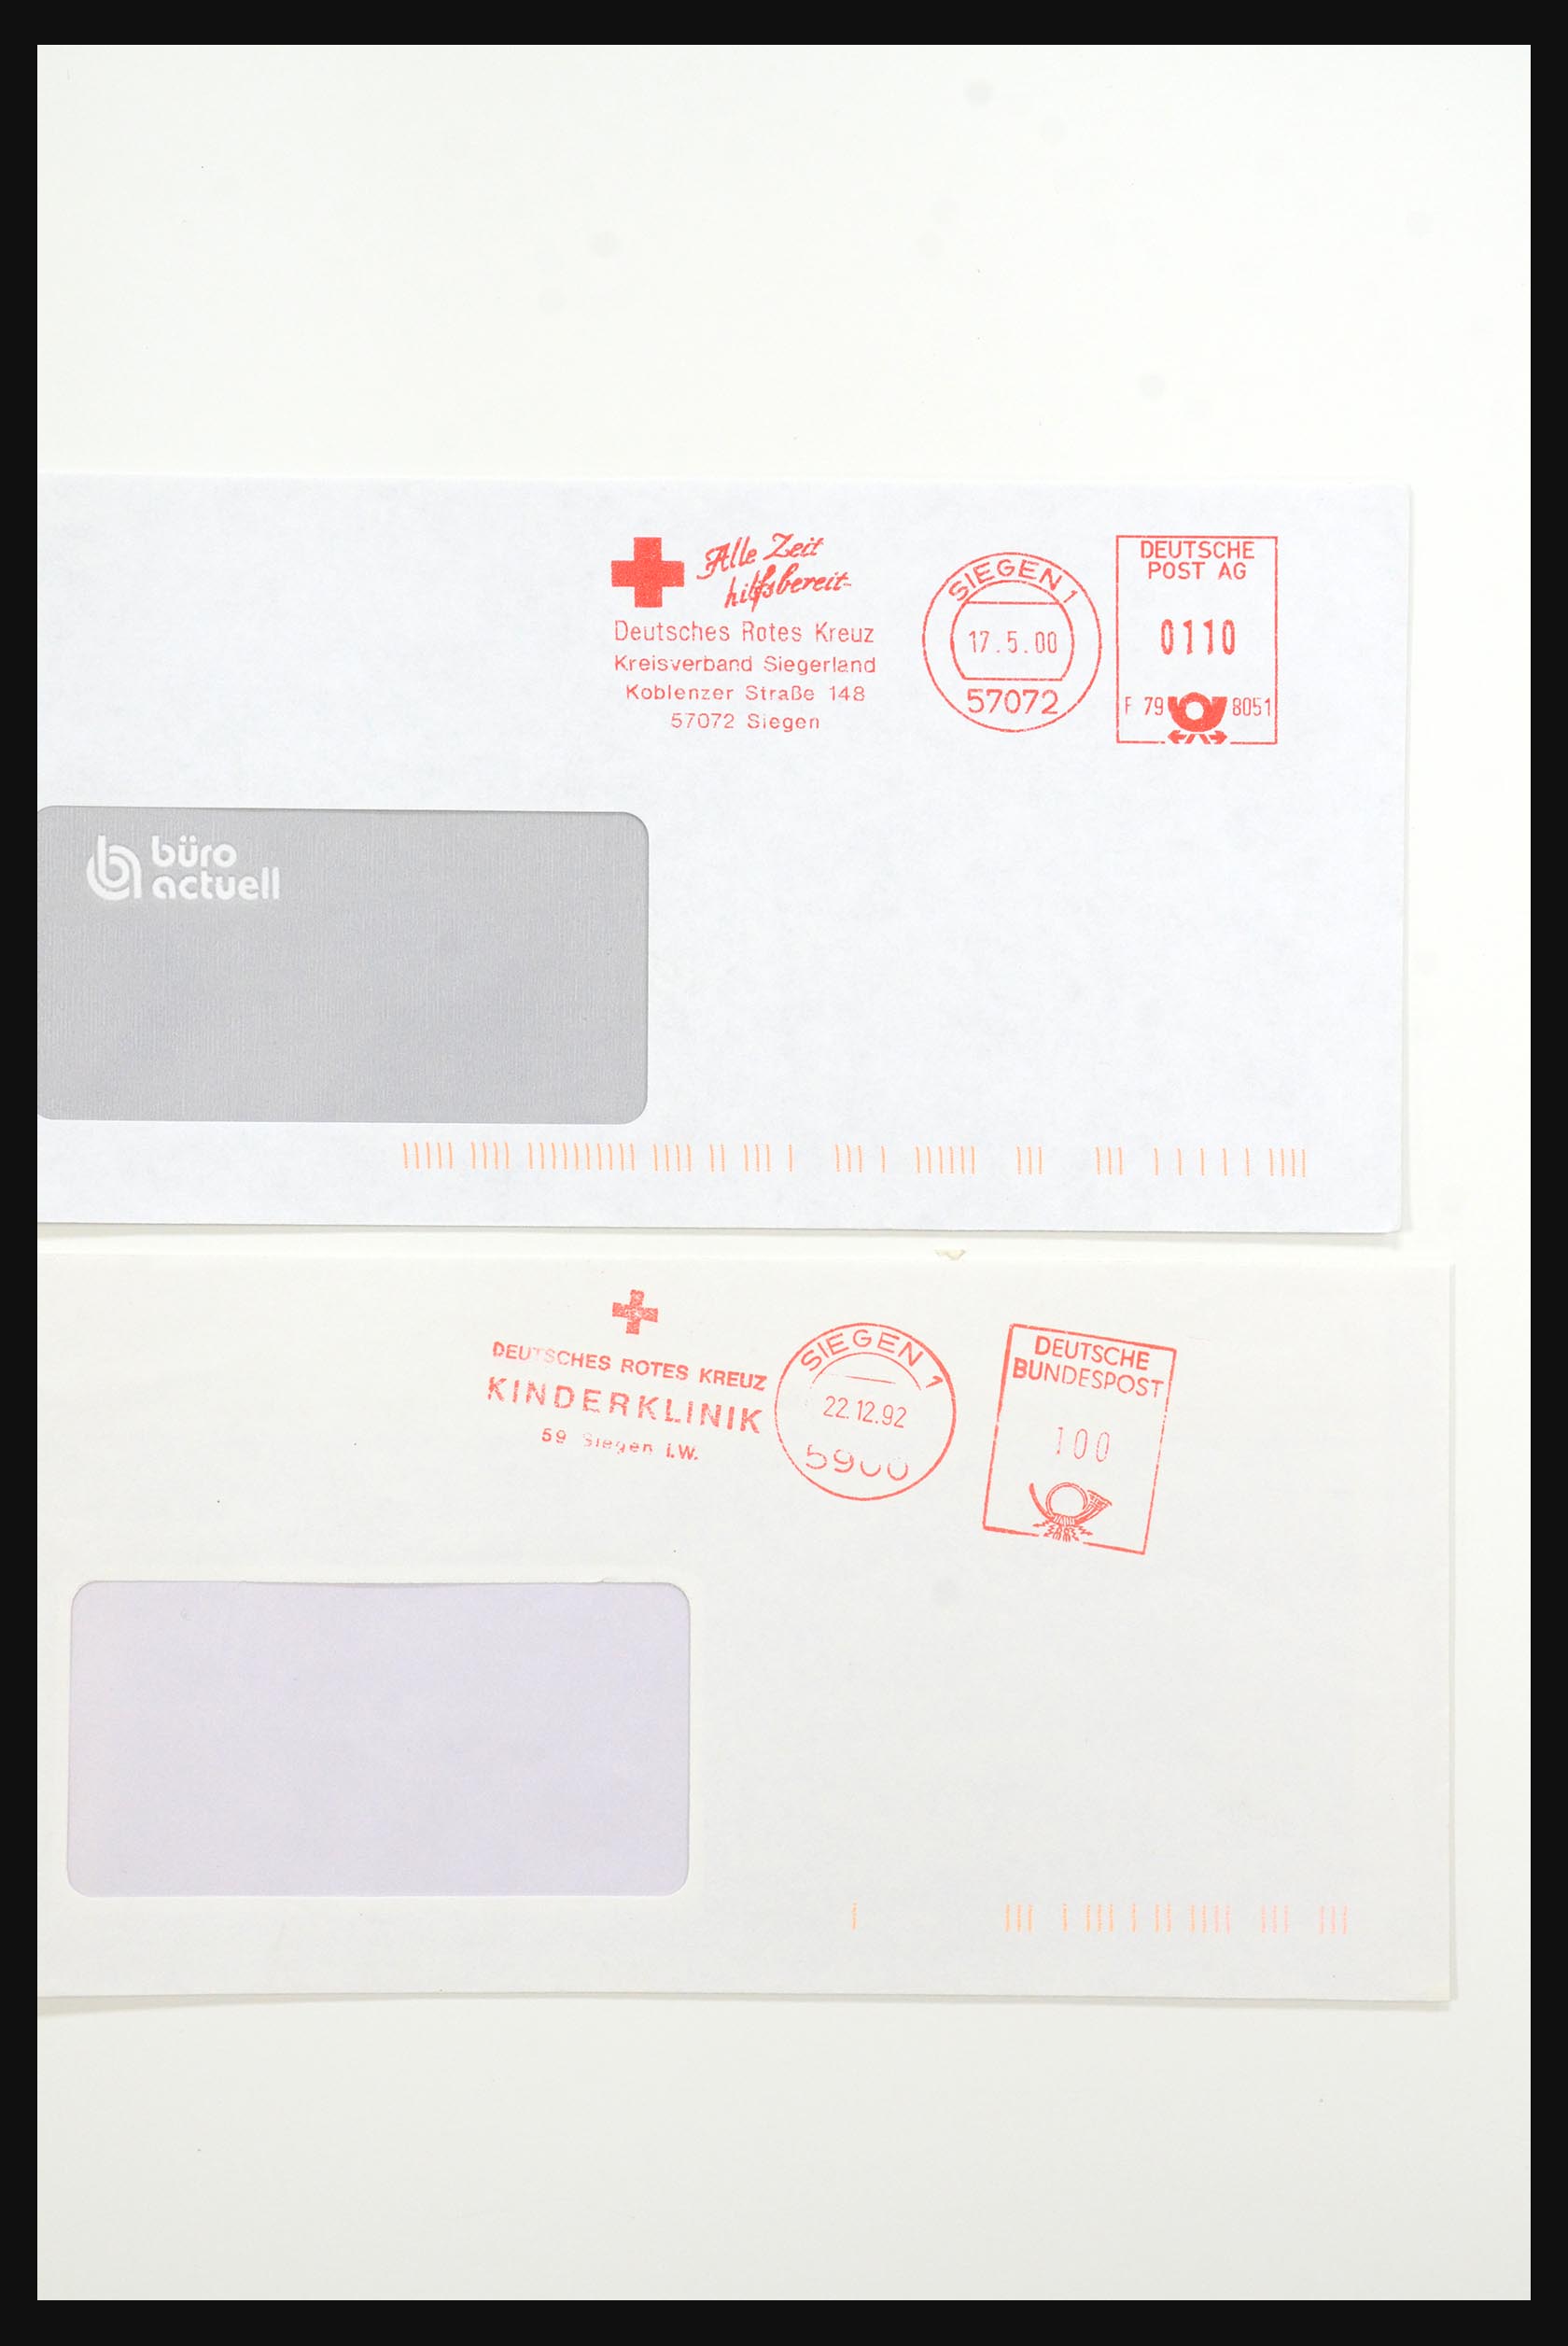 31365 1064 - 31365 Rode kruis brieven 1905-1975.